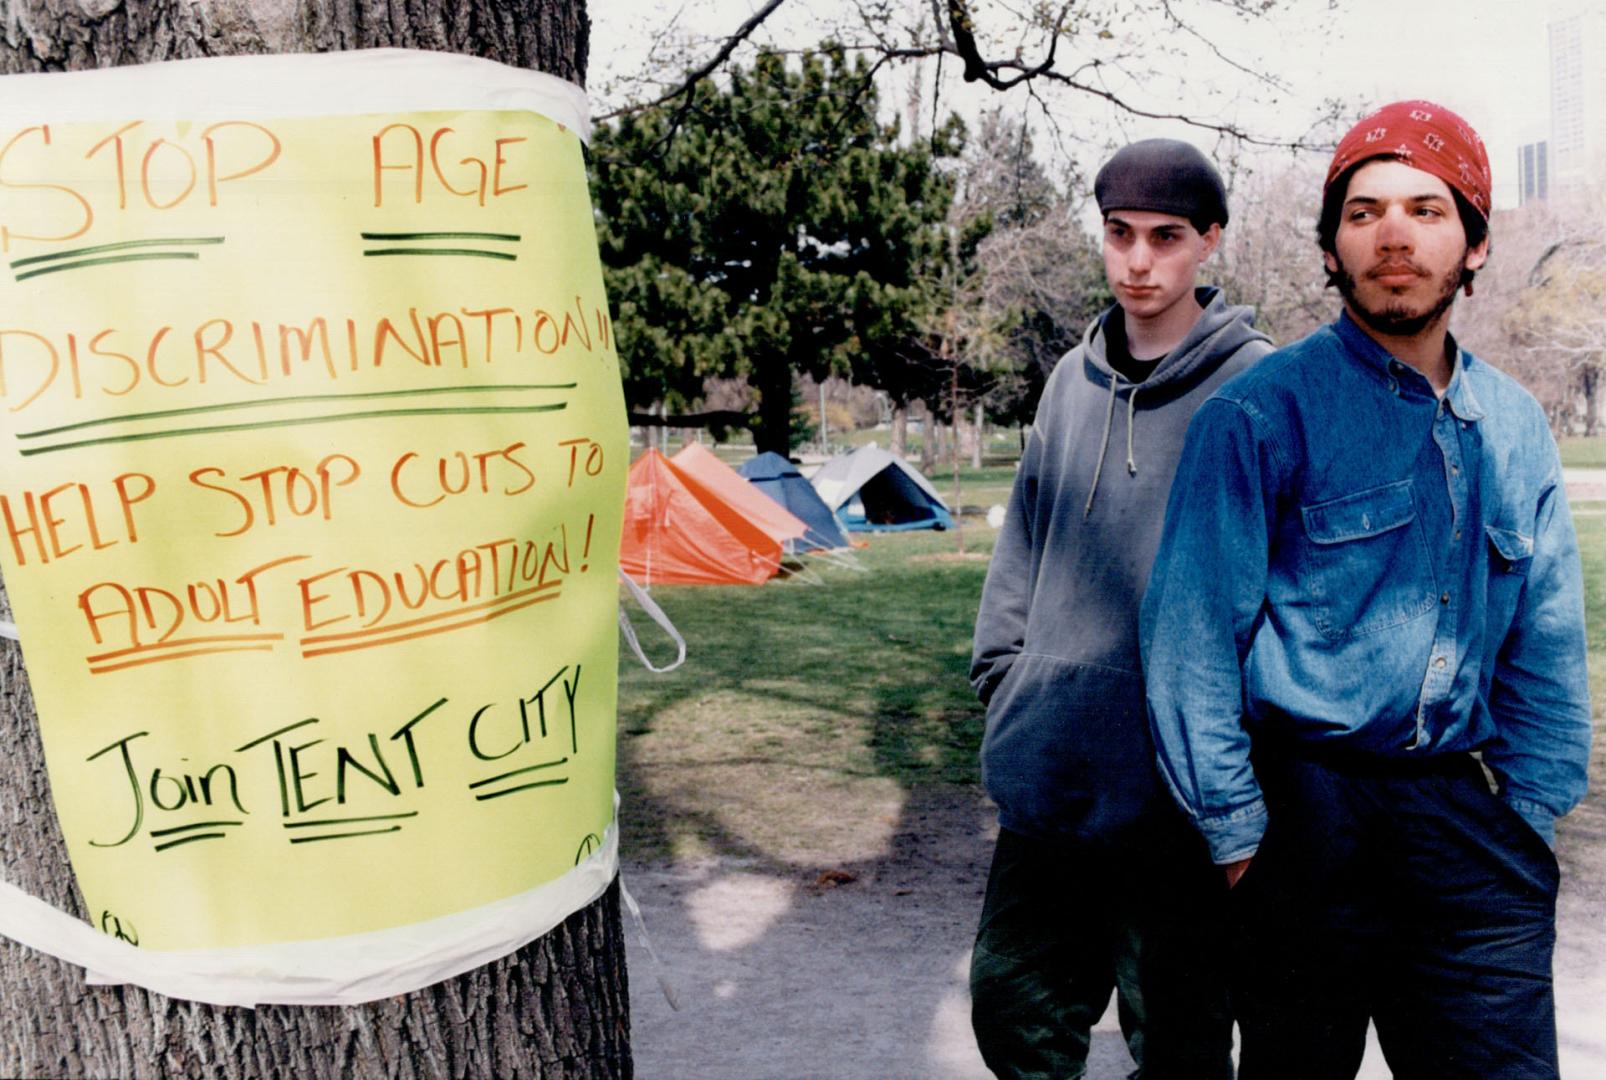 Queens Park, Andrew Cavanagh, 19 (left), Jegundu Bisset, 25